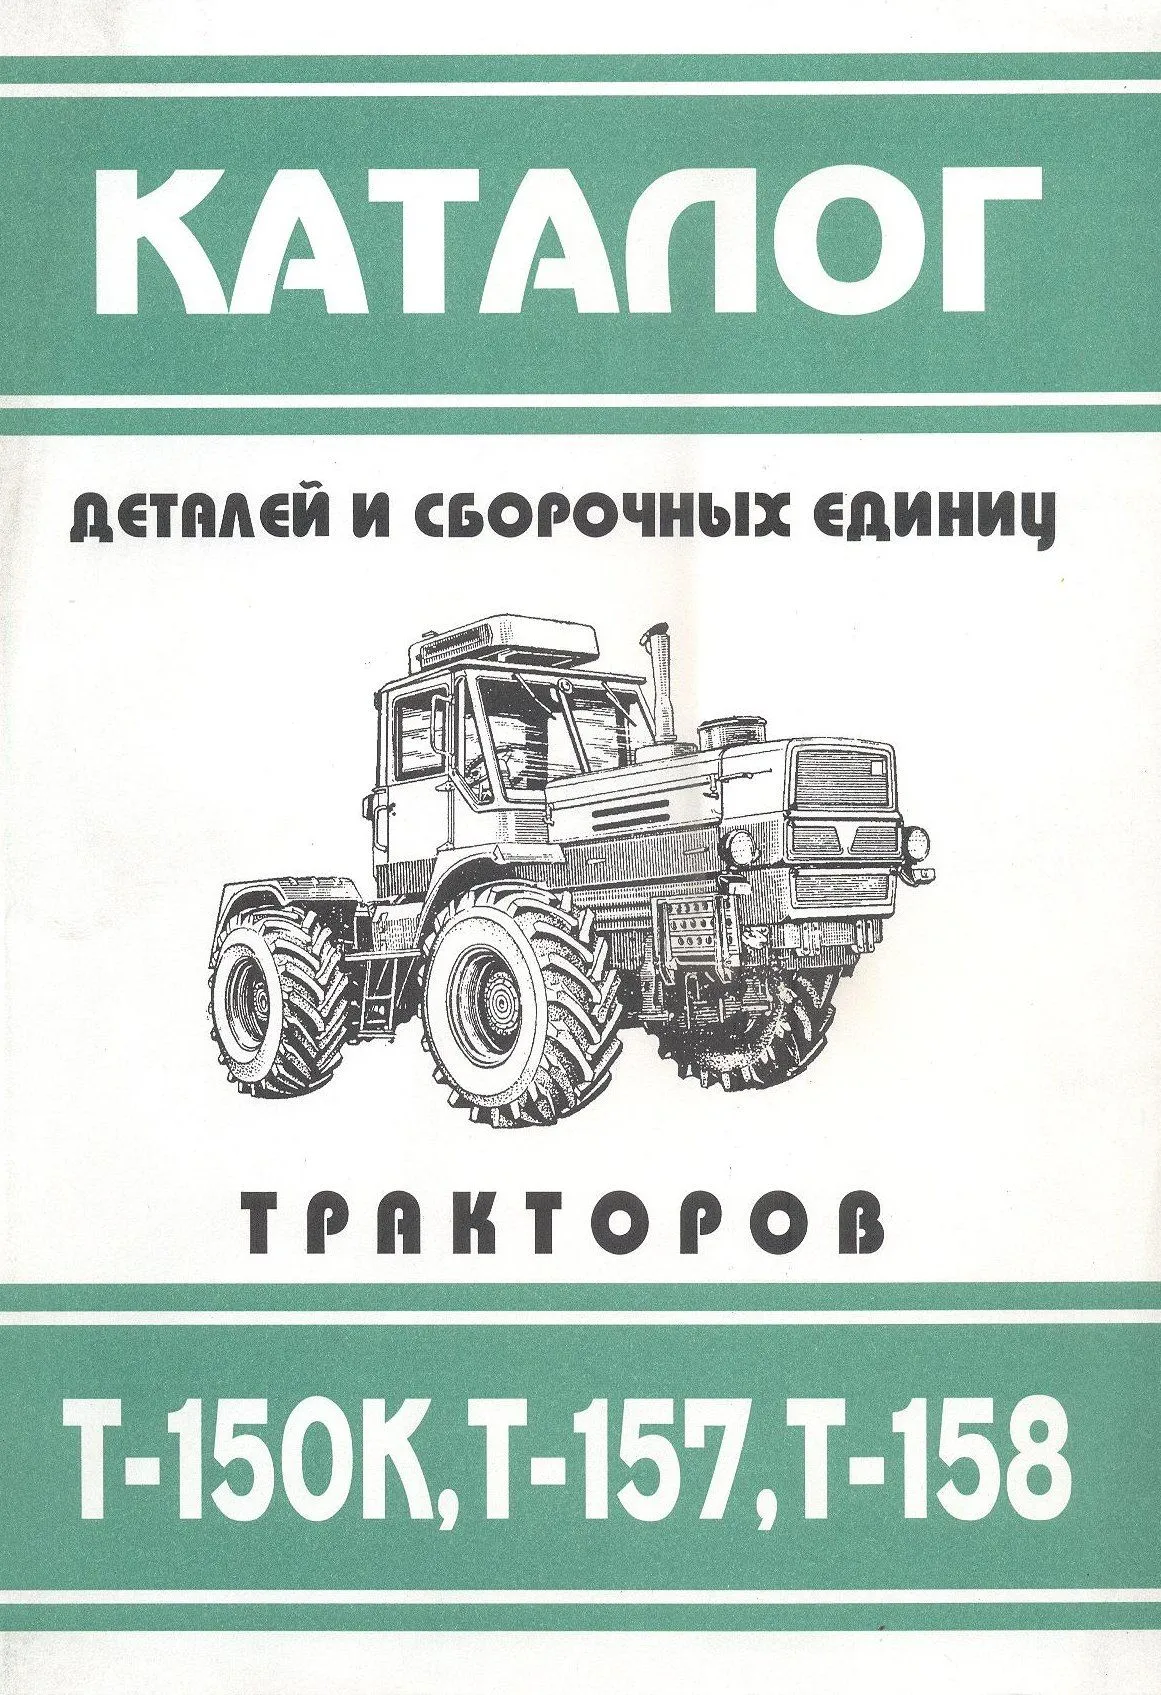 Каталог деталей и сборочных деталей тракторов Т-150К, Т-157, Т-158. Колесо